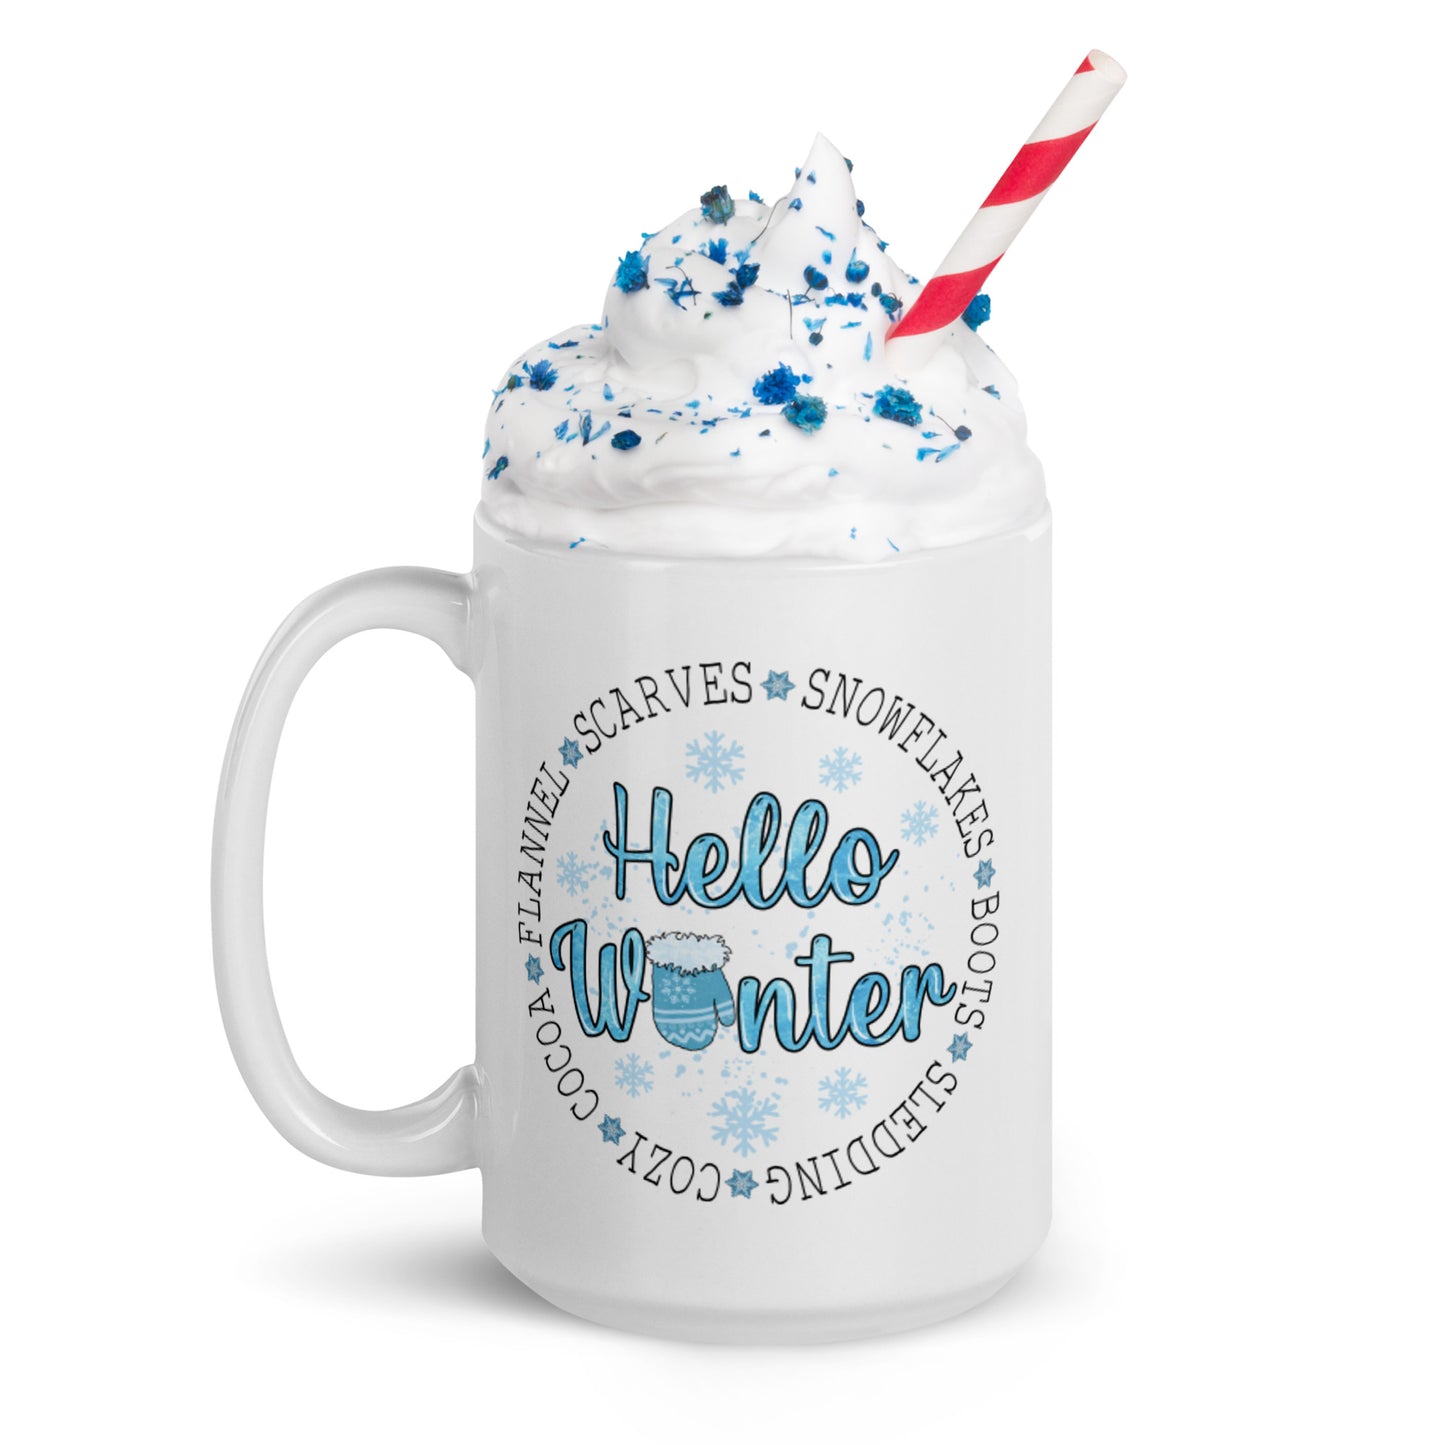 Hello Winter White glossy mug